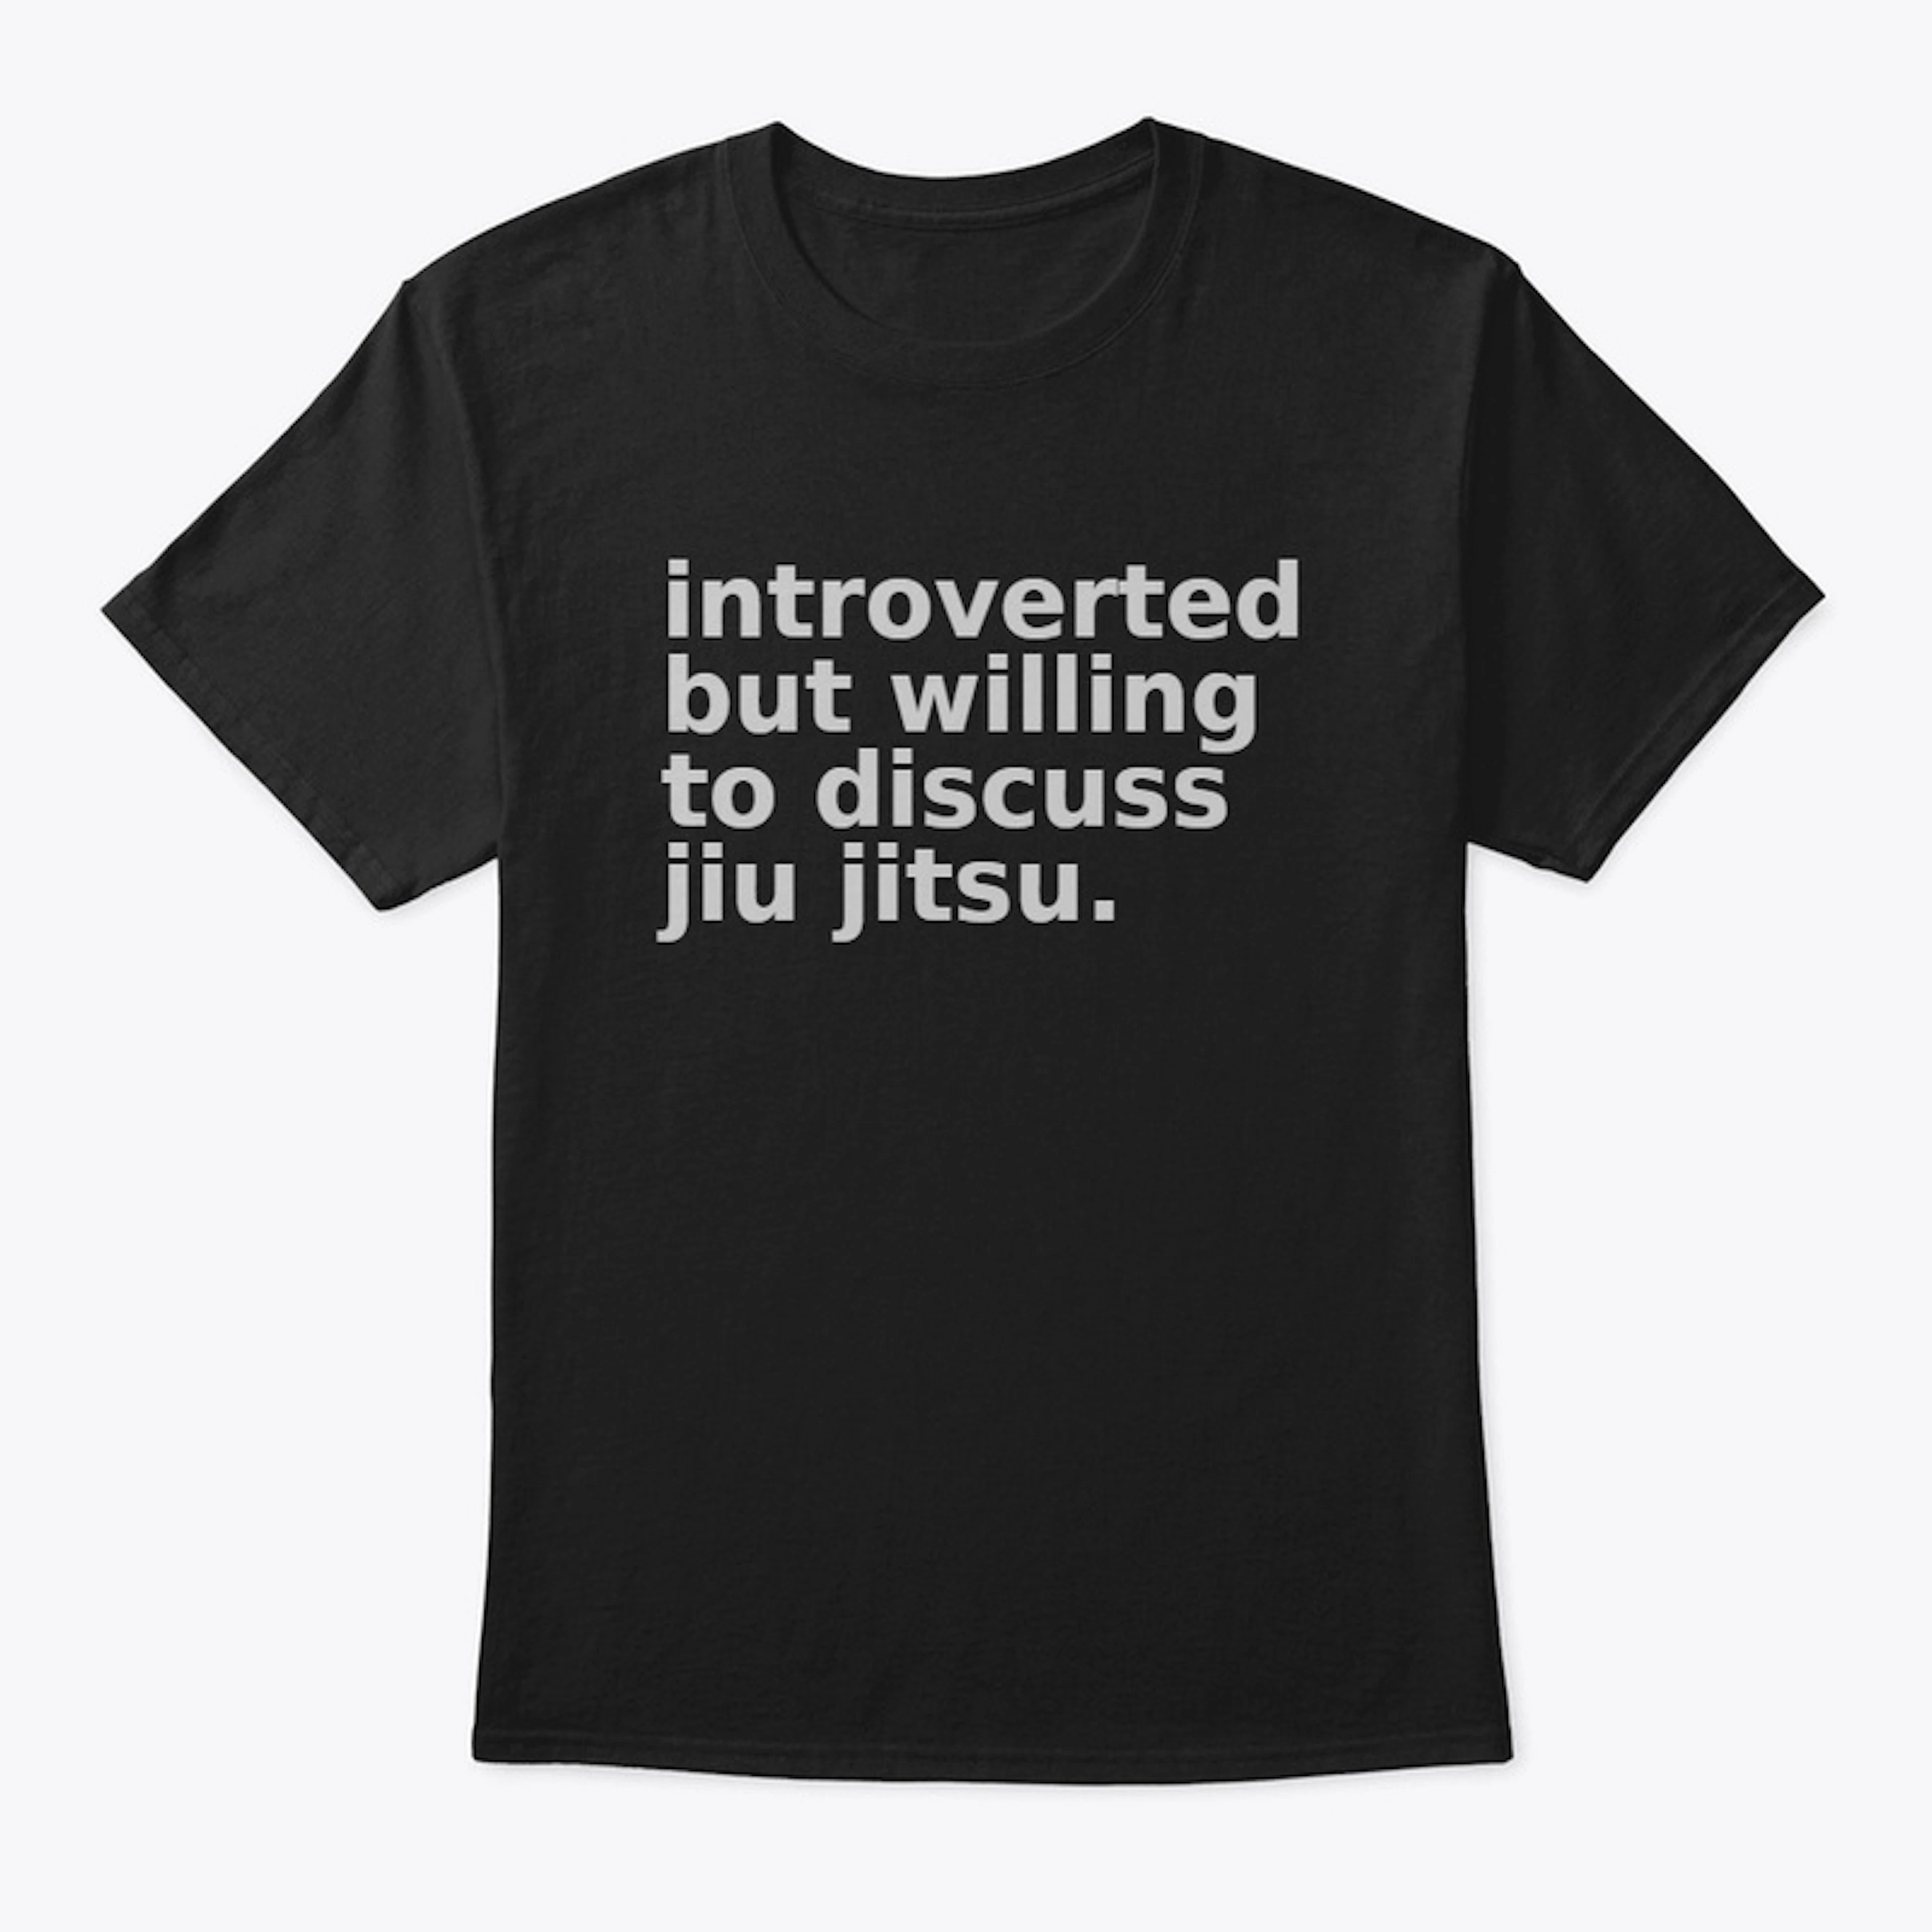 introverted but will discuss jiu jitsu